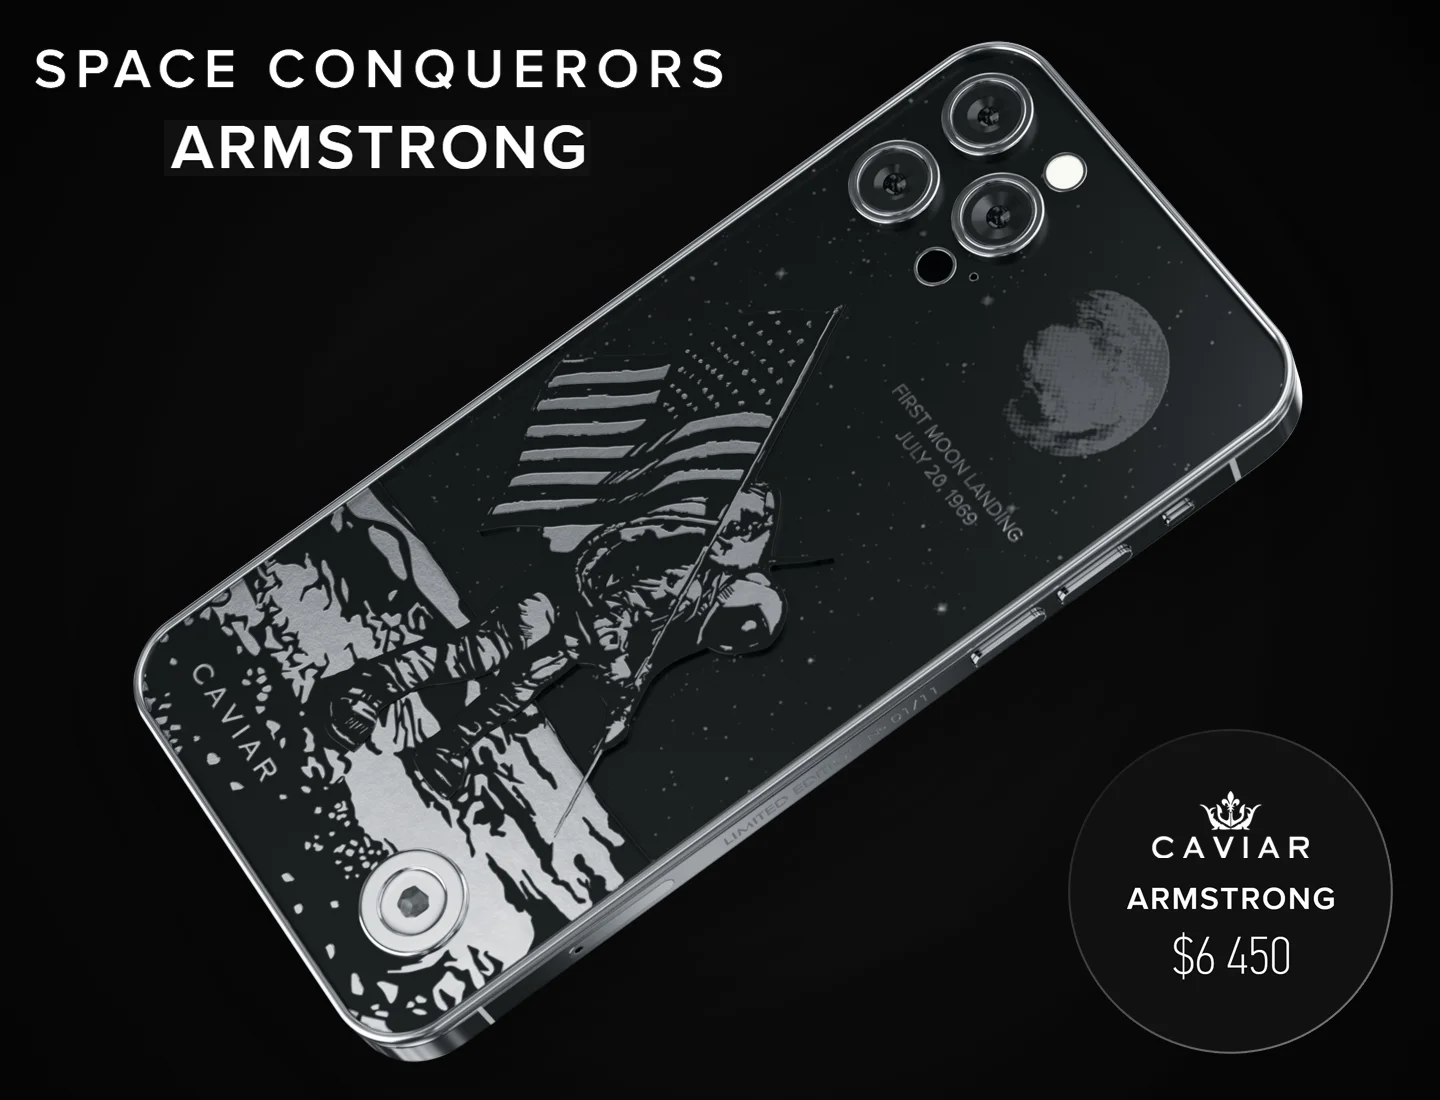 Caviar представила серию iPhone 12 с Гагариным, Маском и Безосом в честь Дня космонавтики - фото 3